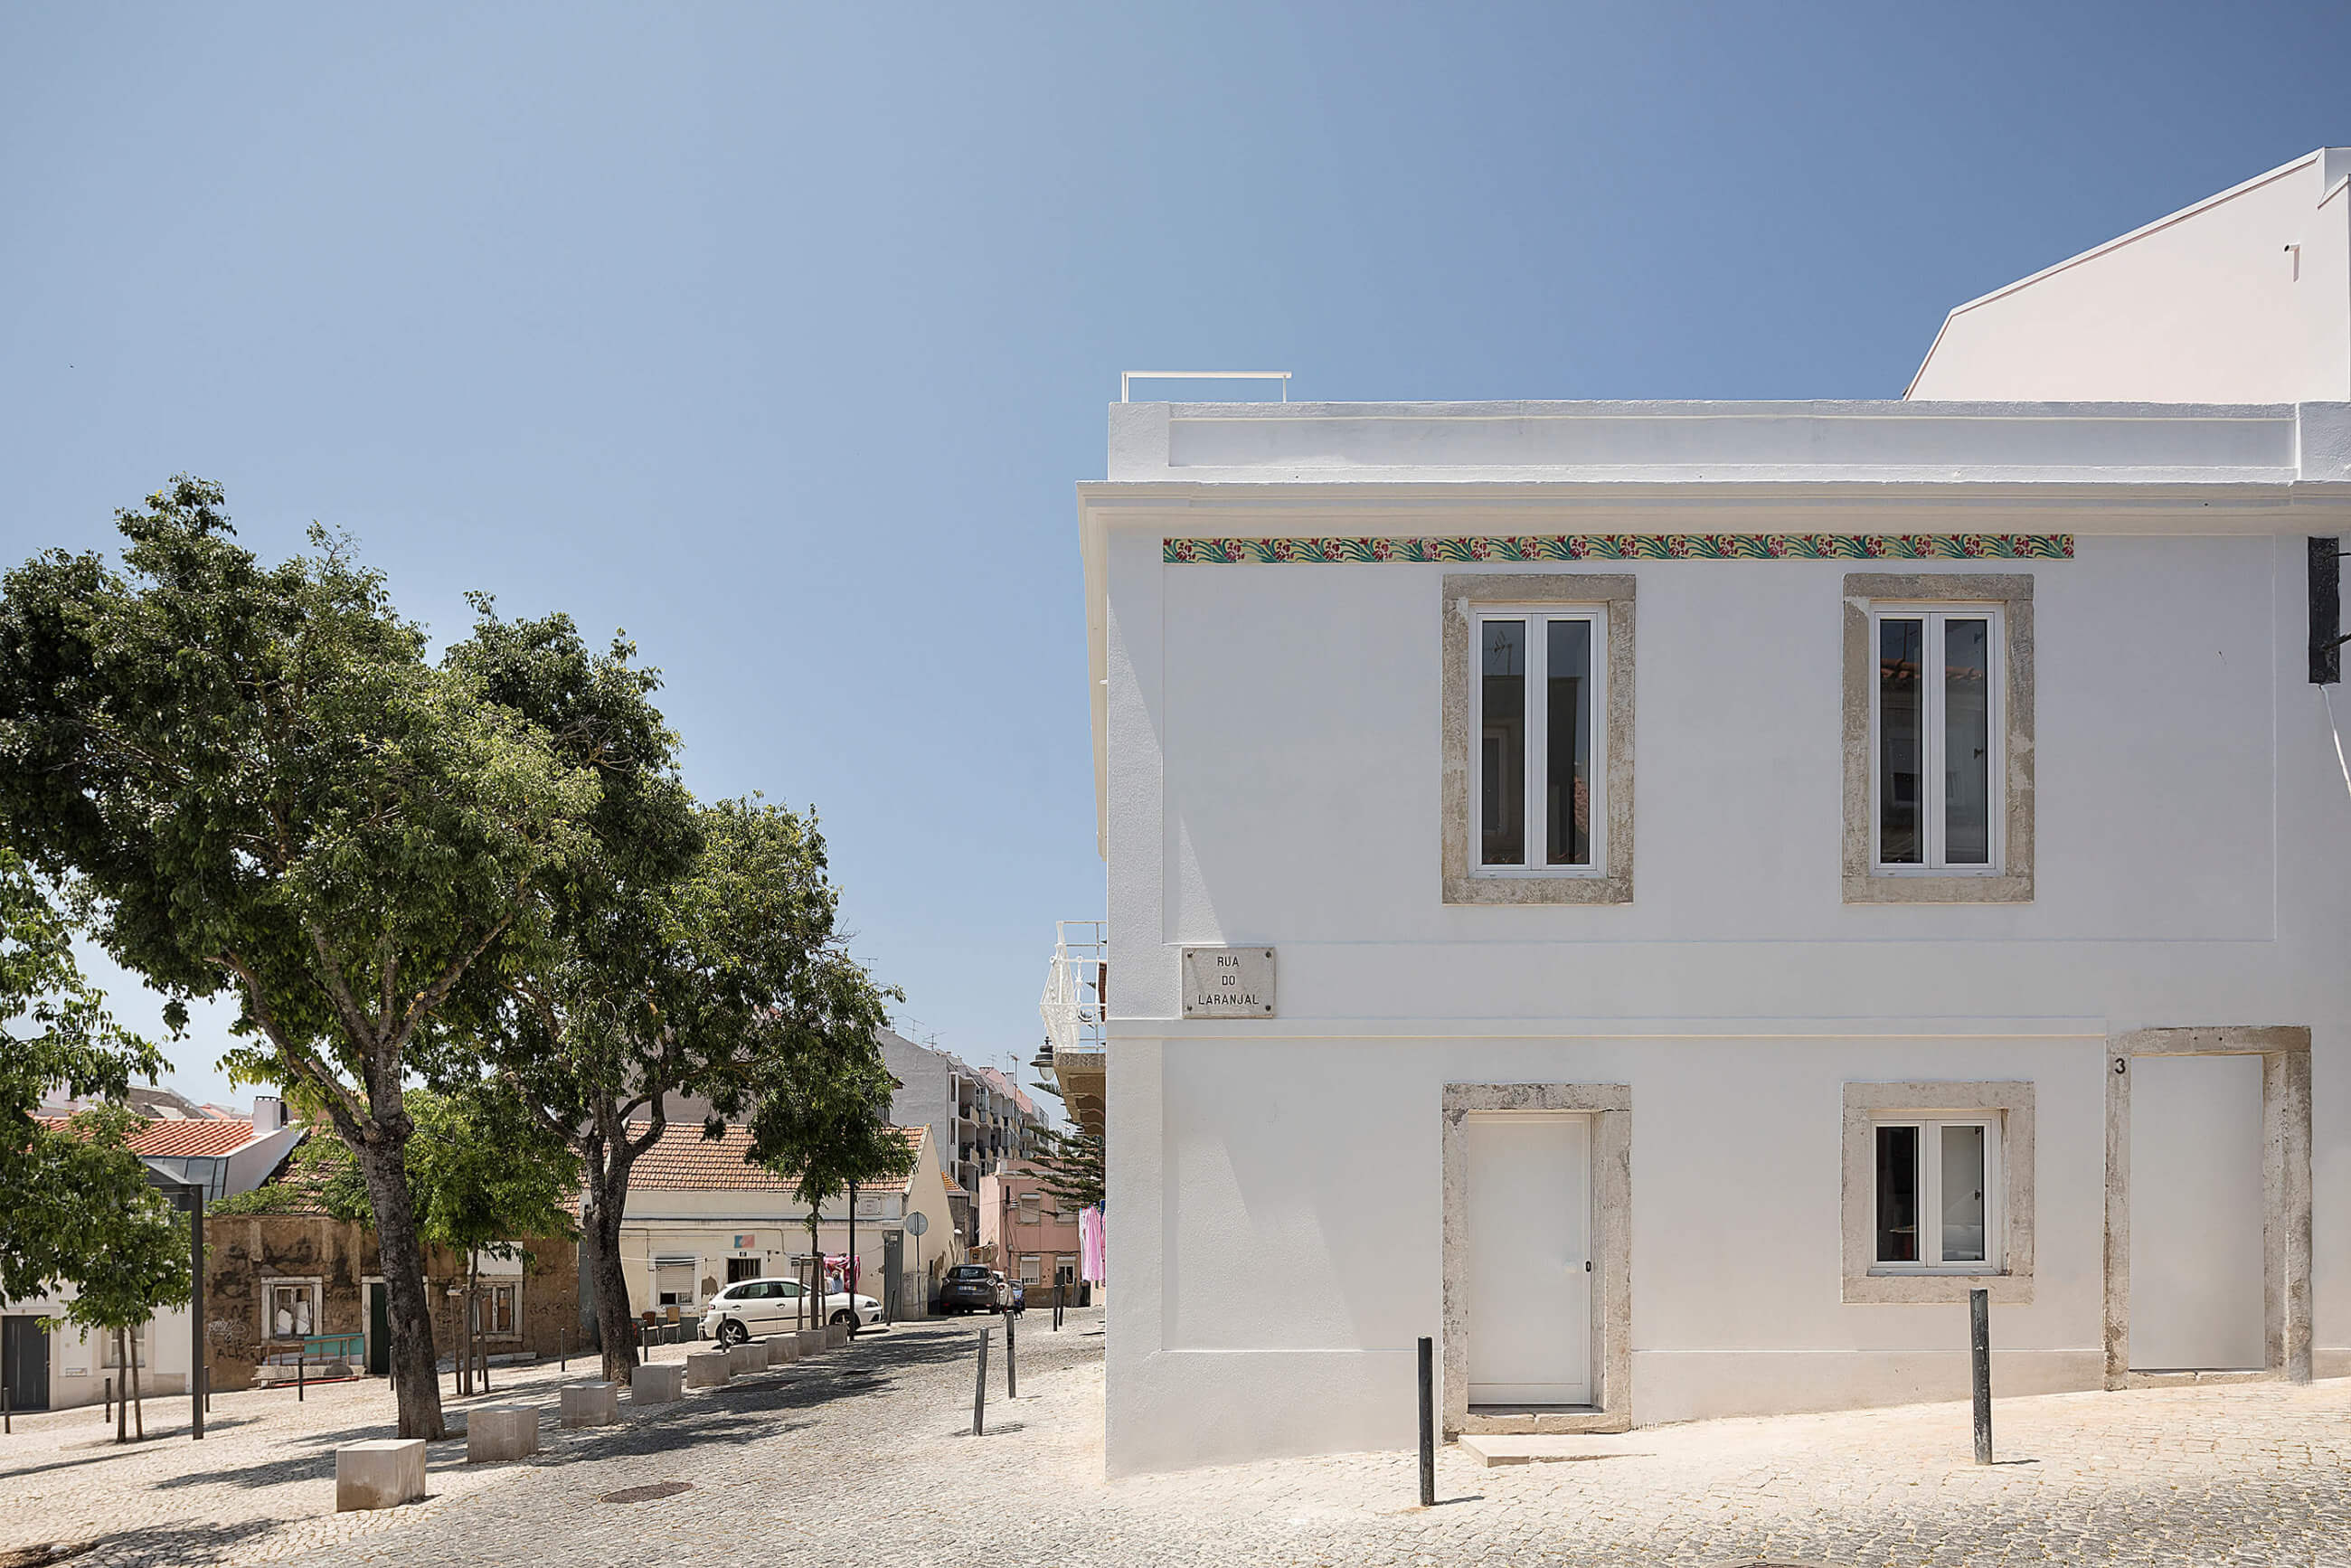 Reportagem Fotografia de arquitectura portuguesa fotografo Ivo tavares studio projecto Casa na Ajuda de Smg Arquitectos